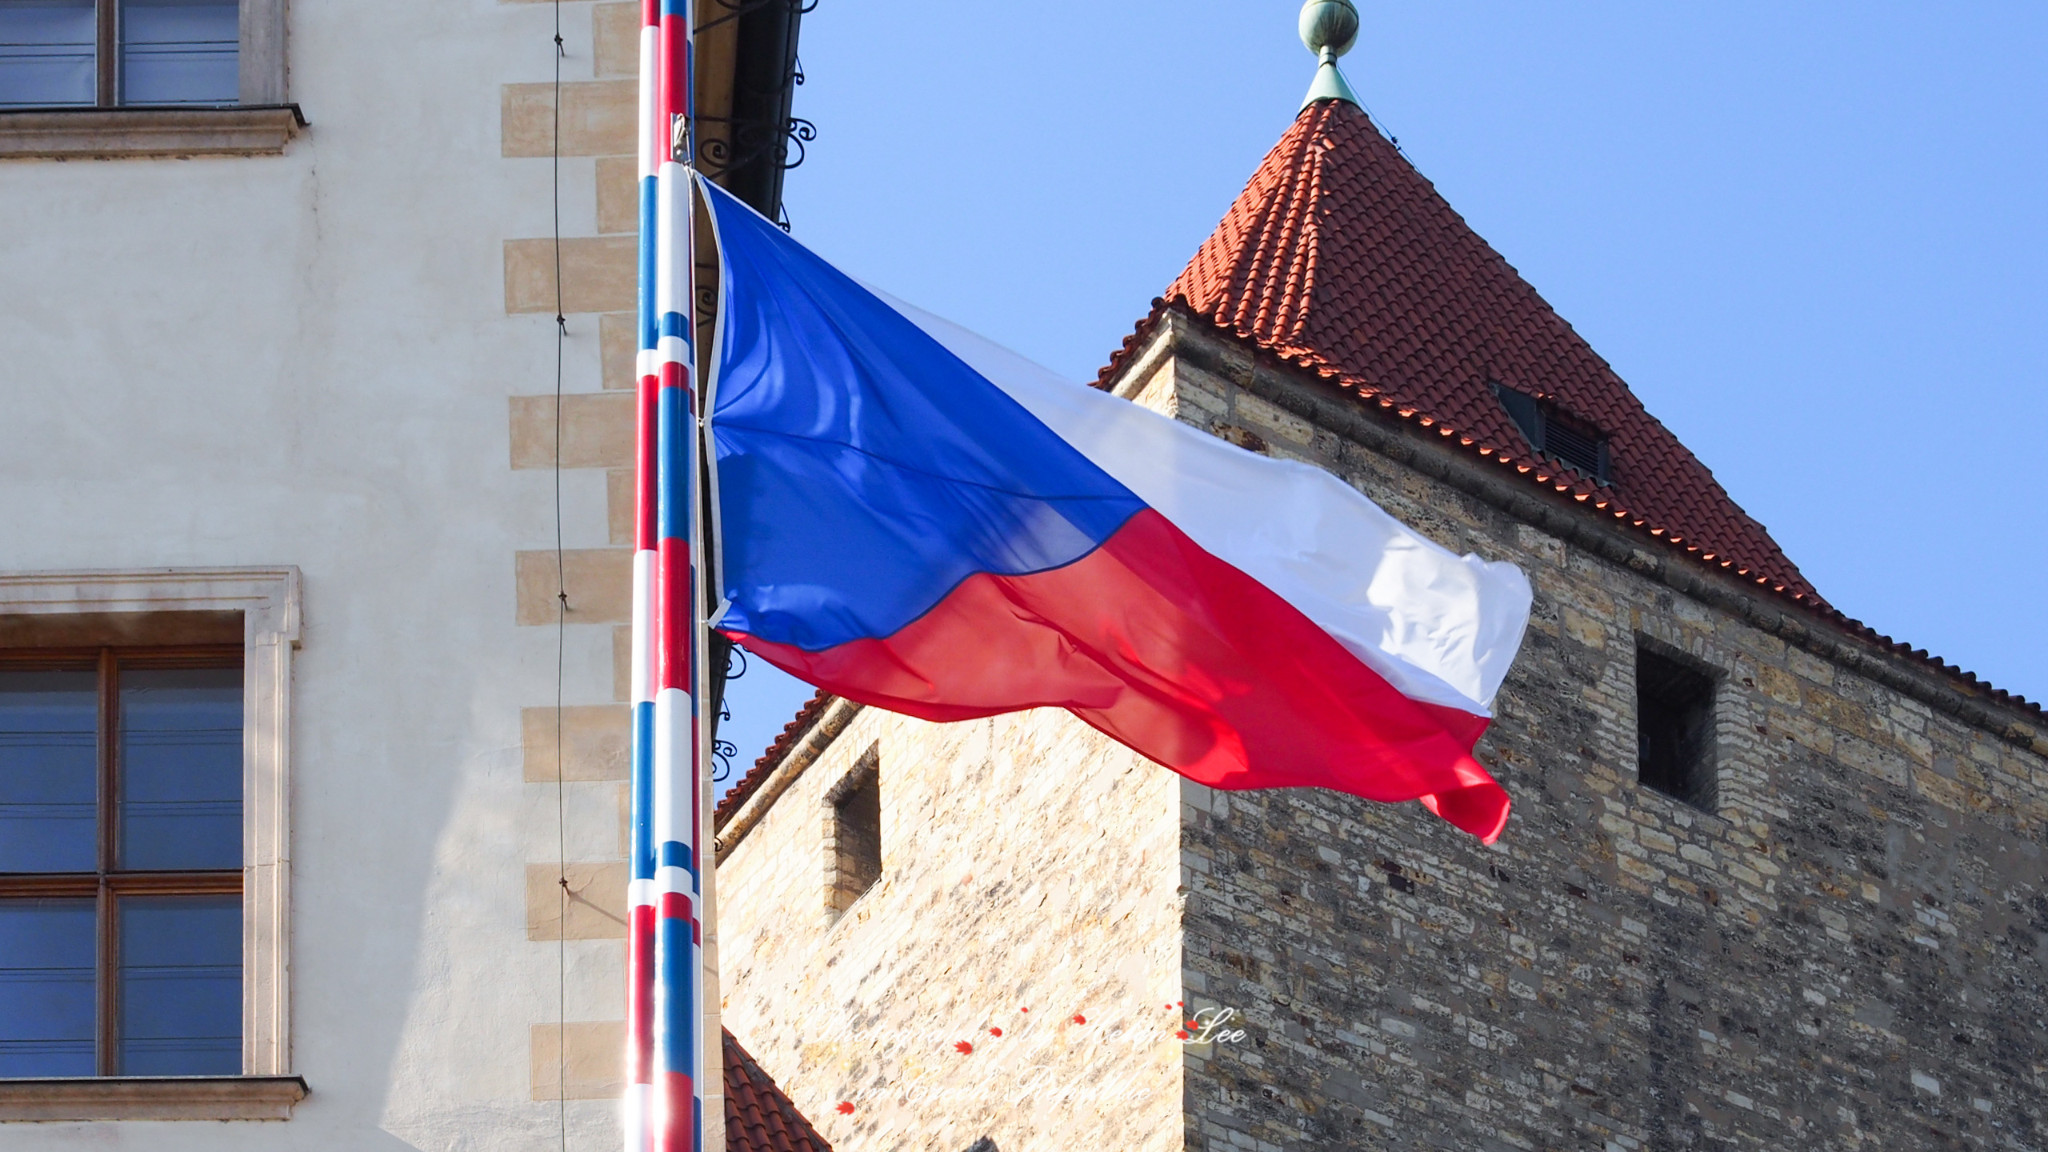 告别人满为患的黄金巷,沿着石子路走下去,抬头就能望见巨大的捷克国旗